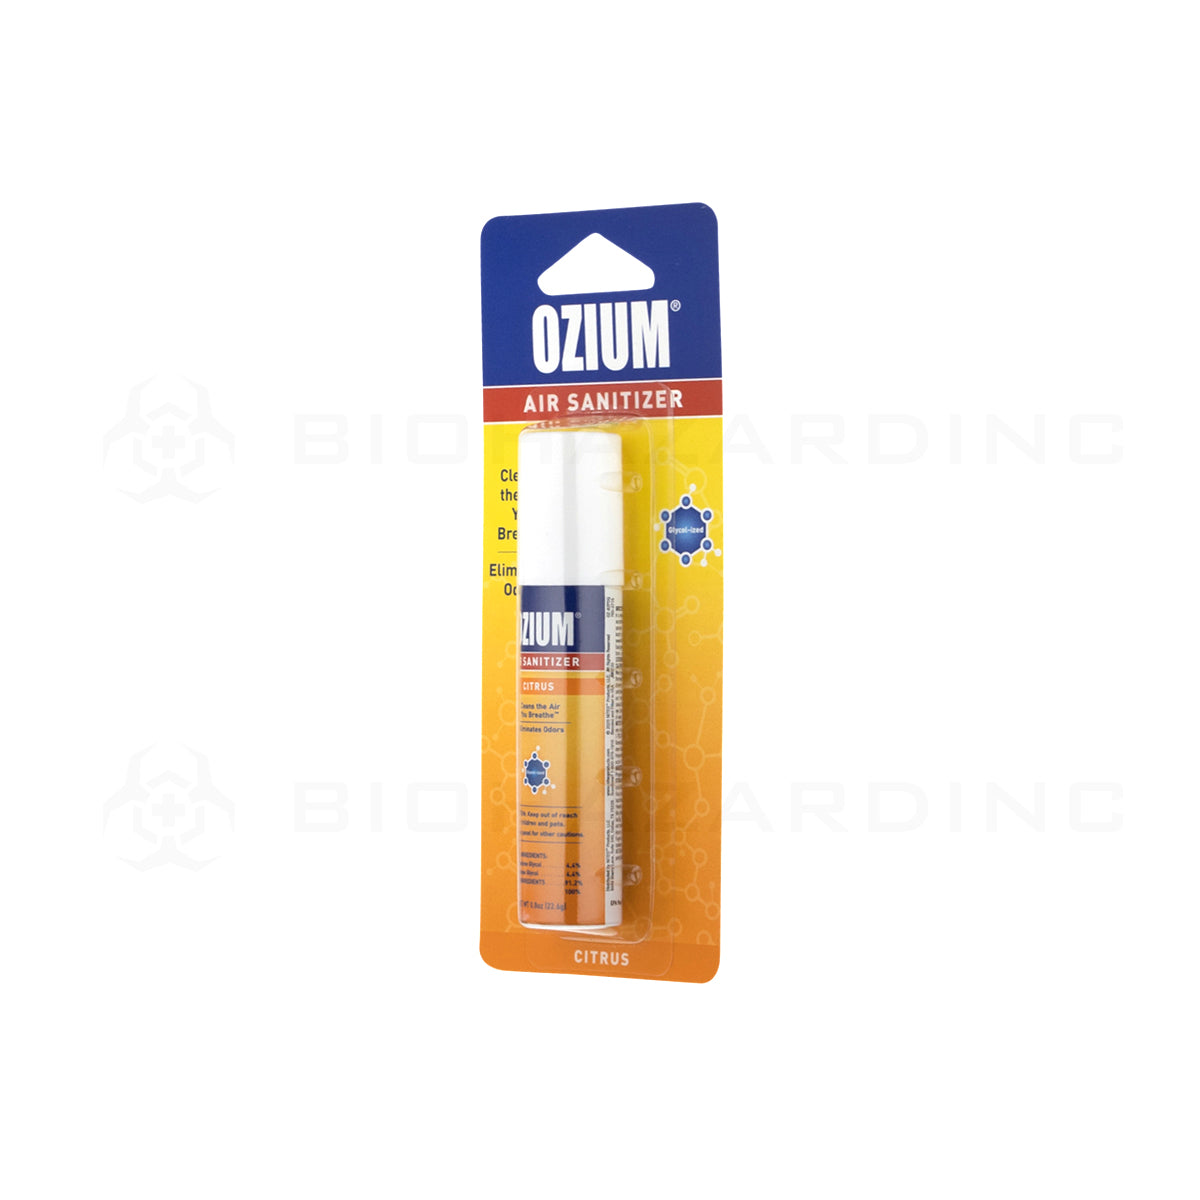 OZIUM® | Citrus Scent Air Sanitizer - 0.8oz Air Freshener Biohazard Inc   